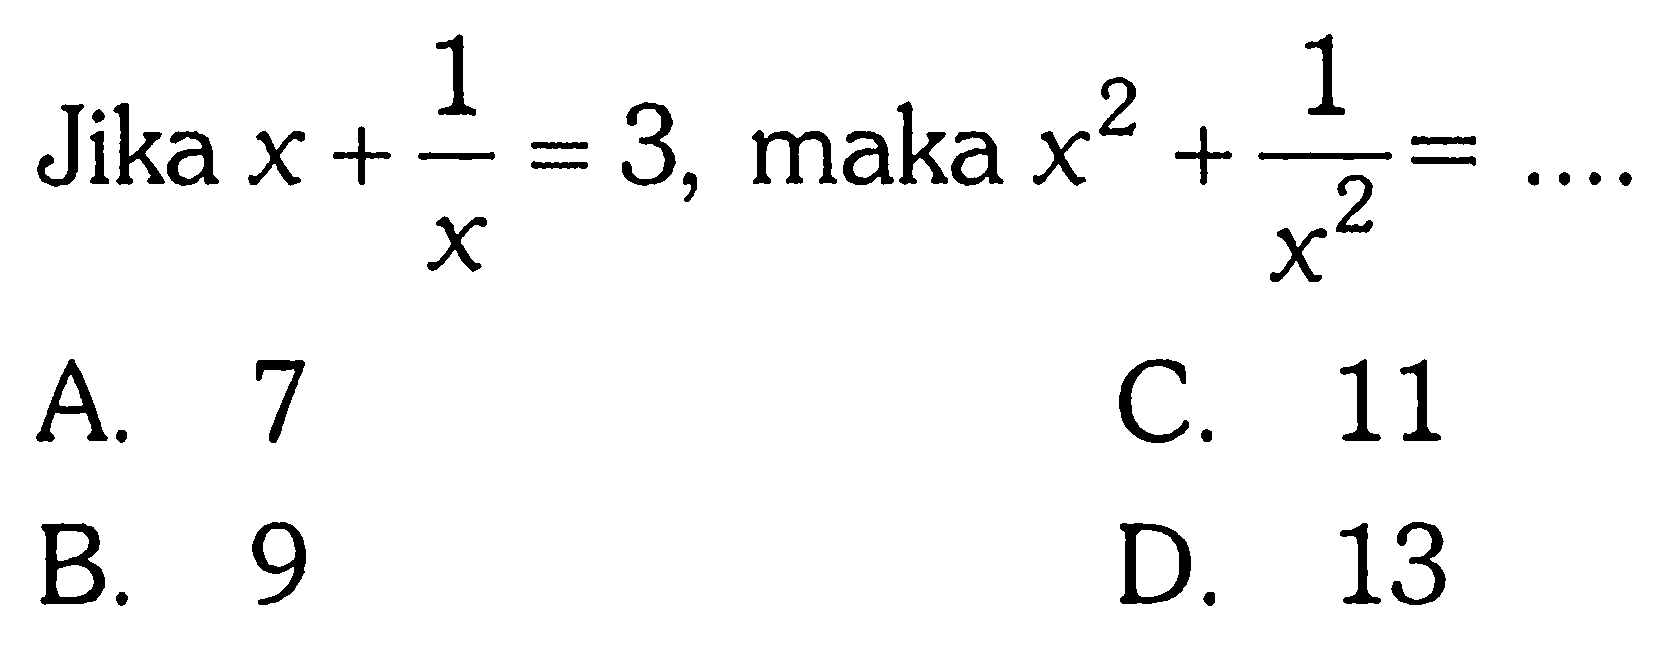 Jika x + 1/x = 3, maka x^2 + 1/x^2 = ...